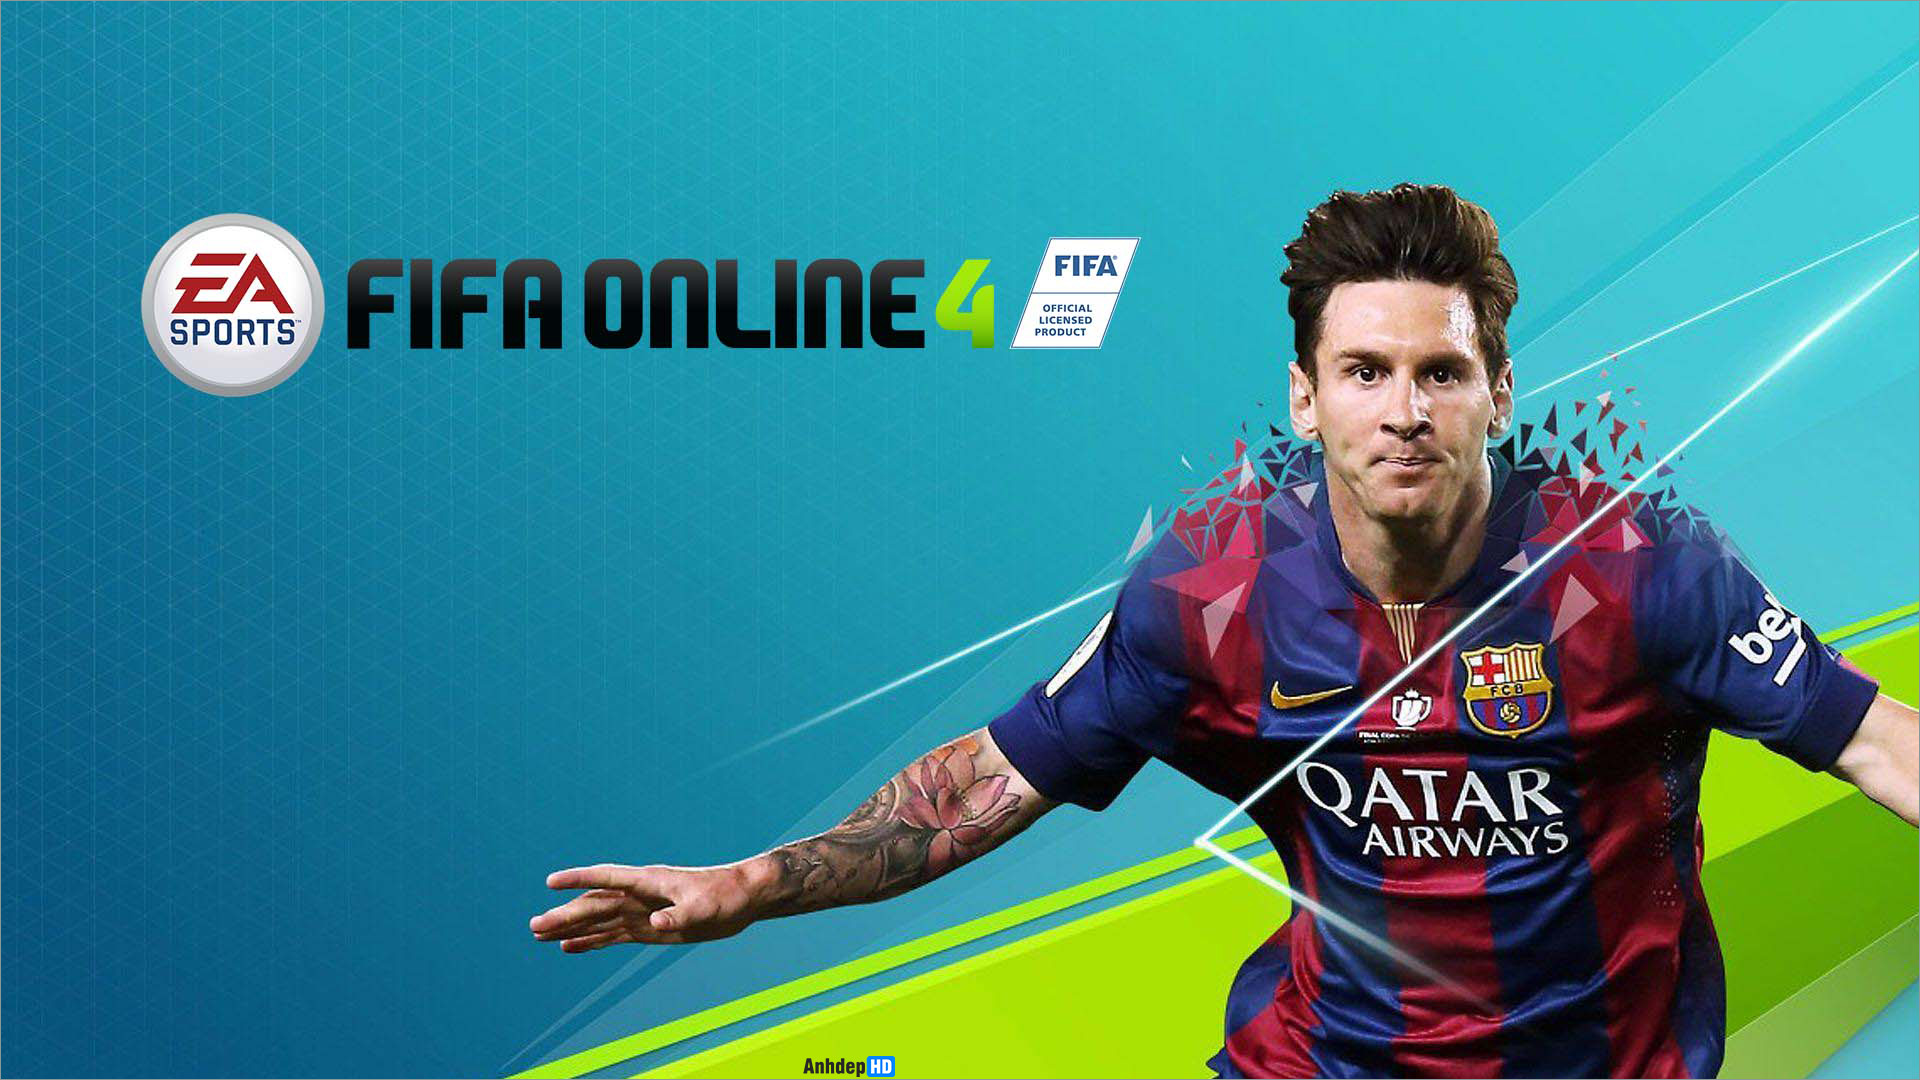 Những hình ảnh tuyệt đẹp về Fifa Mobile Online sẽ khiến bạn không thể rời mắt khỏi chiếc màn hình điện thoại. Quả bóng tròn và các cầu thủ được tái hiện đầy chân thật sẽ mang đến cho bạn những trải nghiệm tuyệt vời nhất.